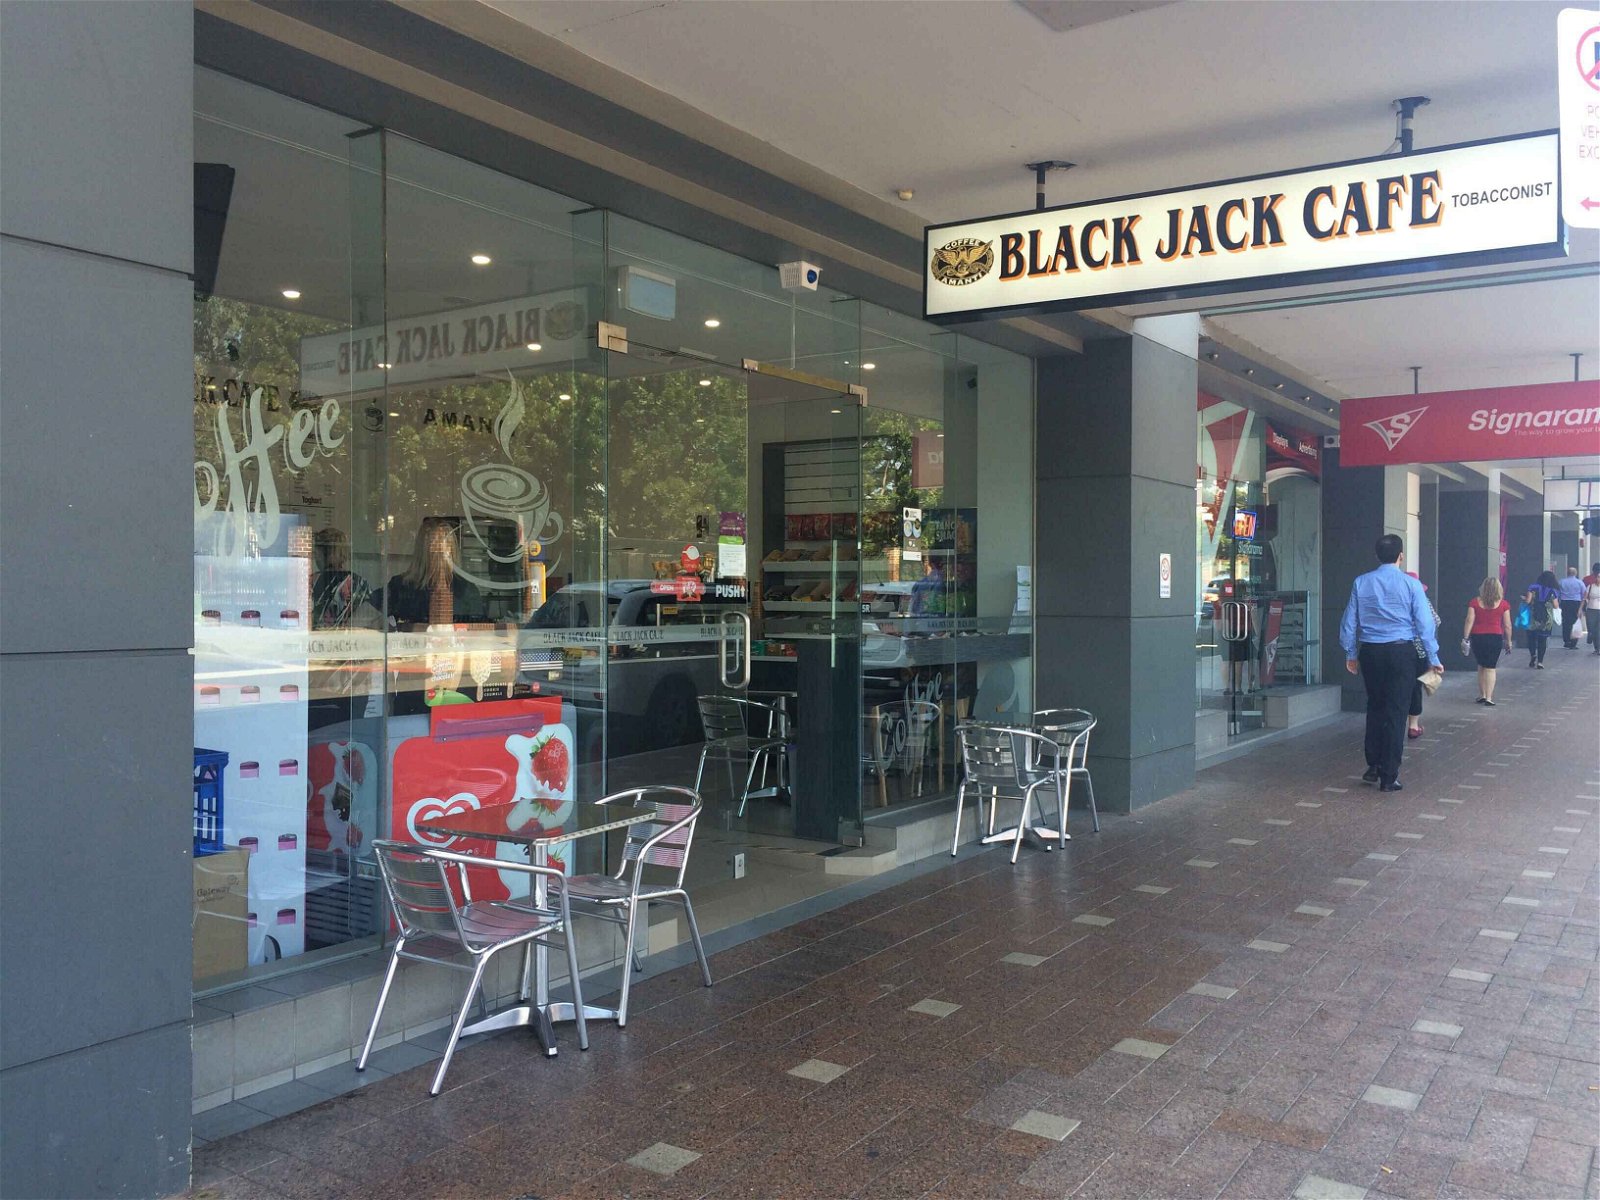 Black Jack Cafe - Food Delivery Shop